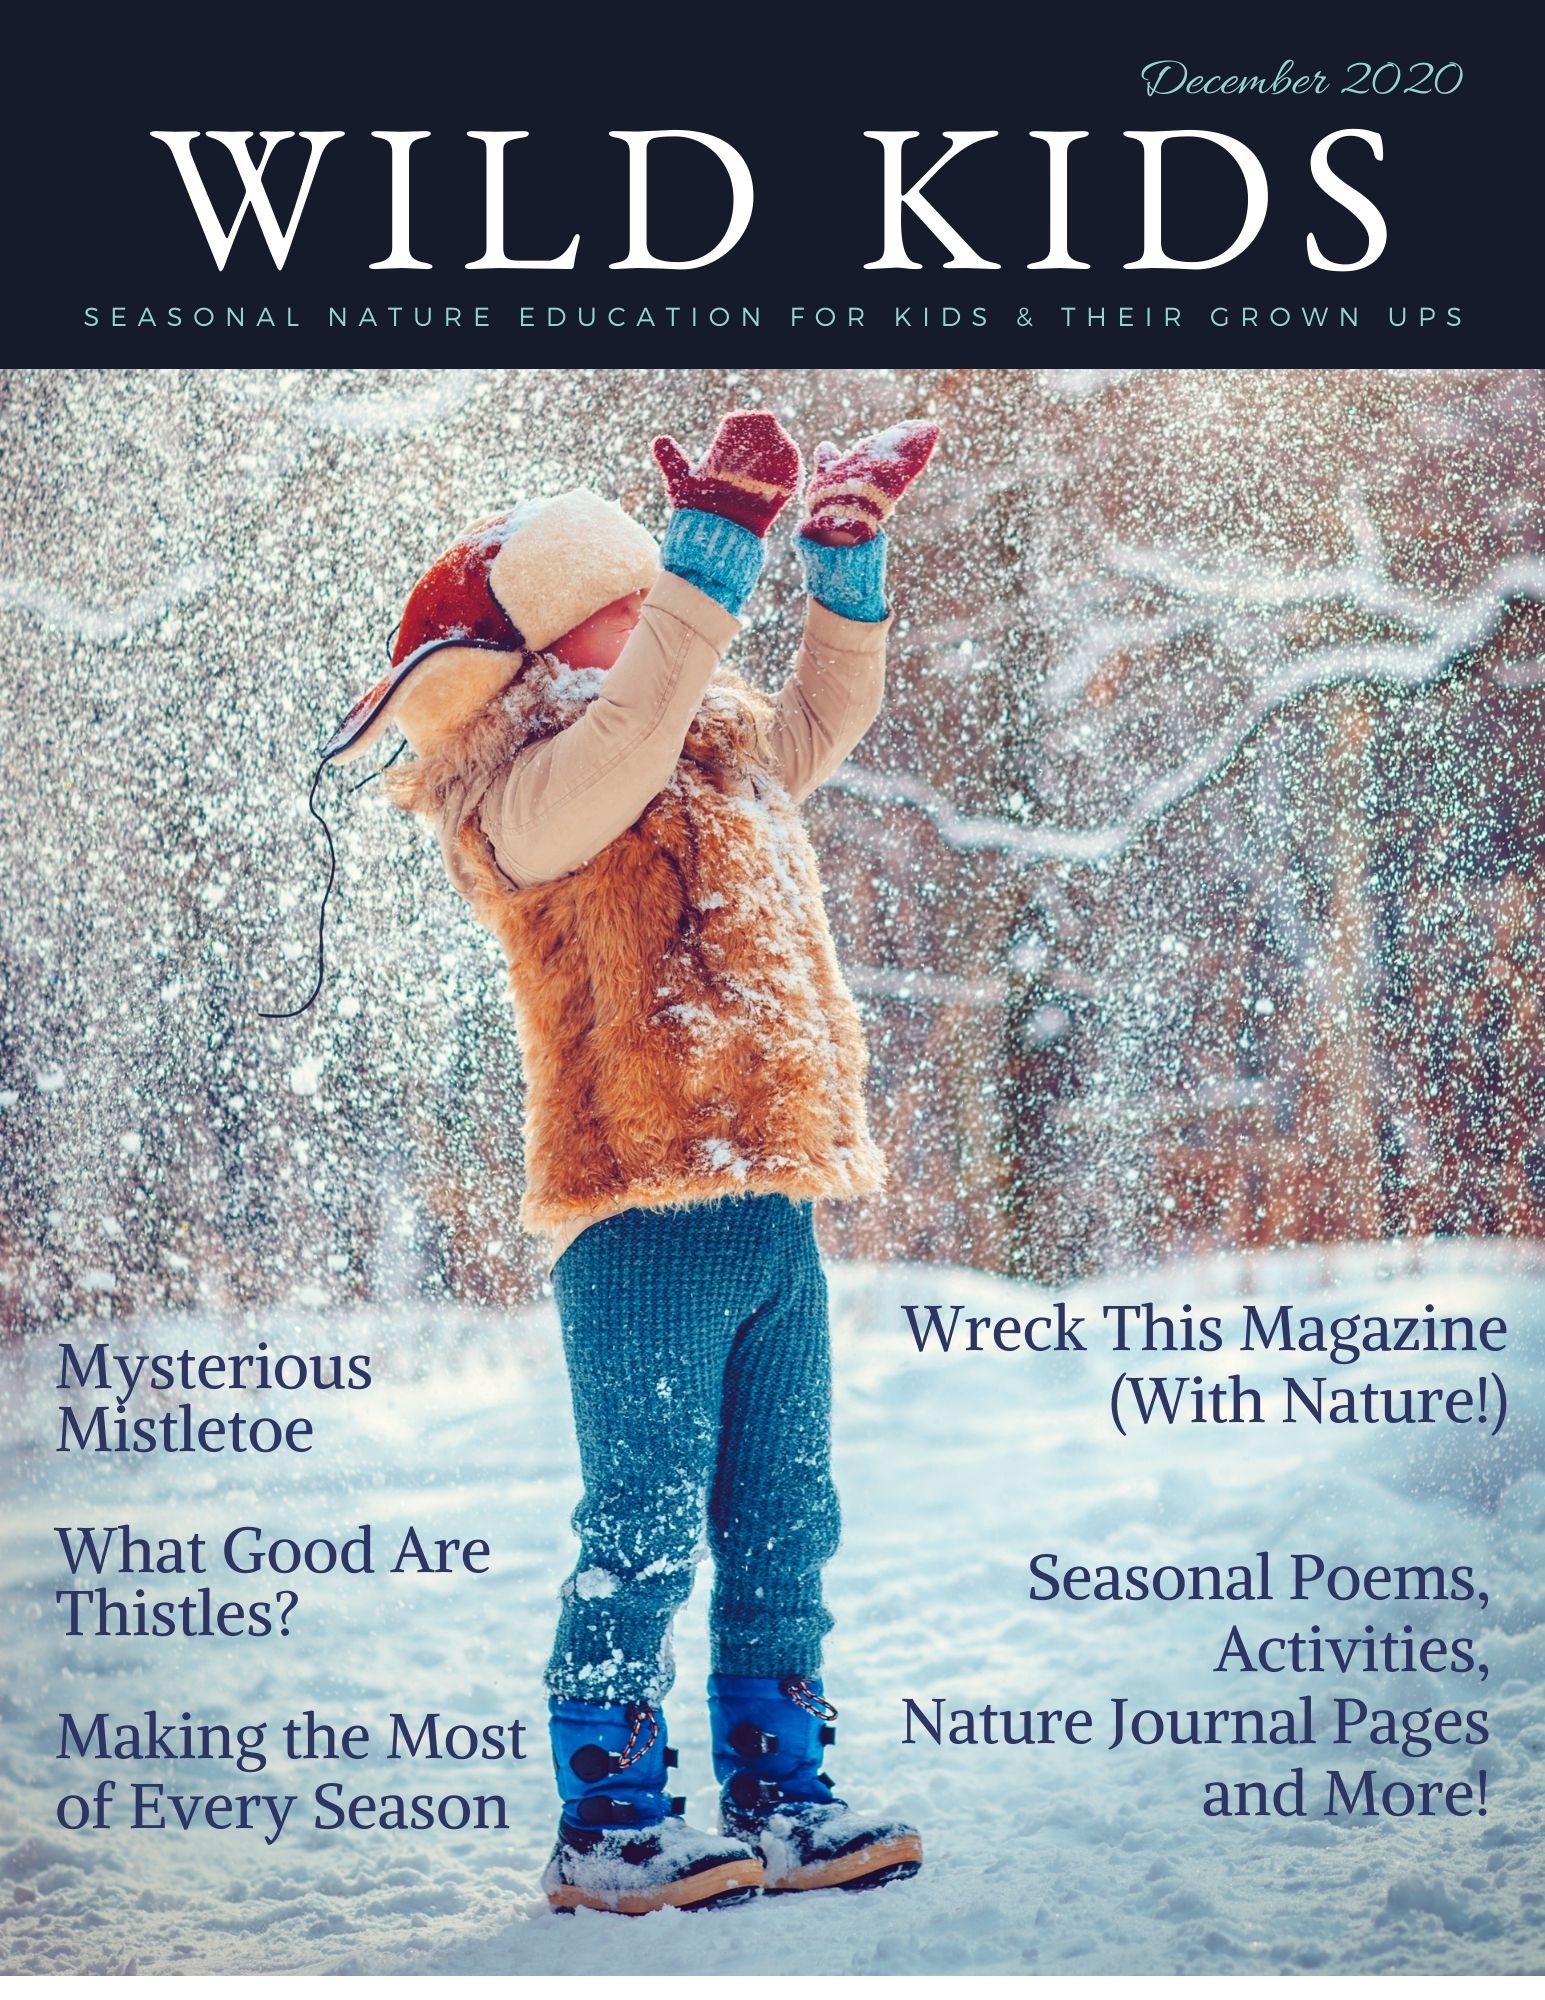 December 2020 Wild Kids Magazine